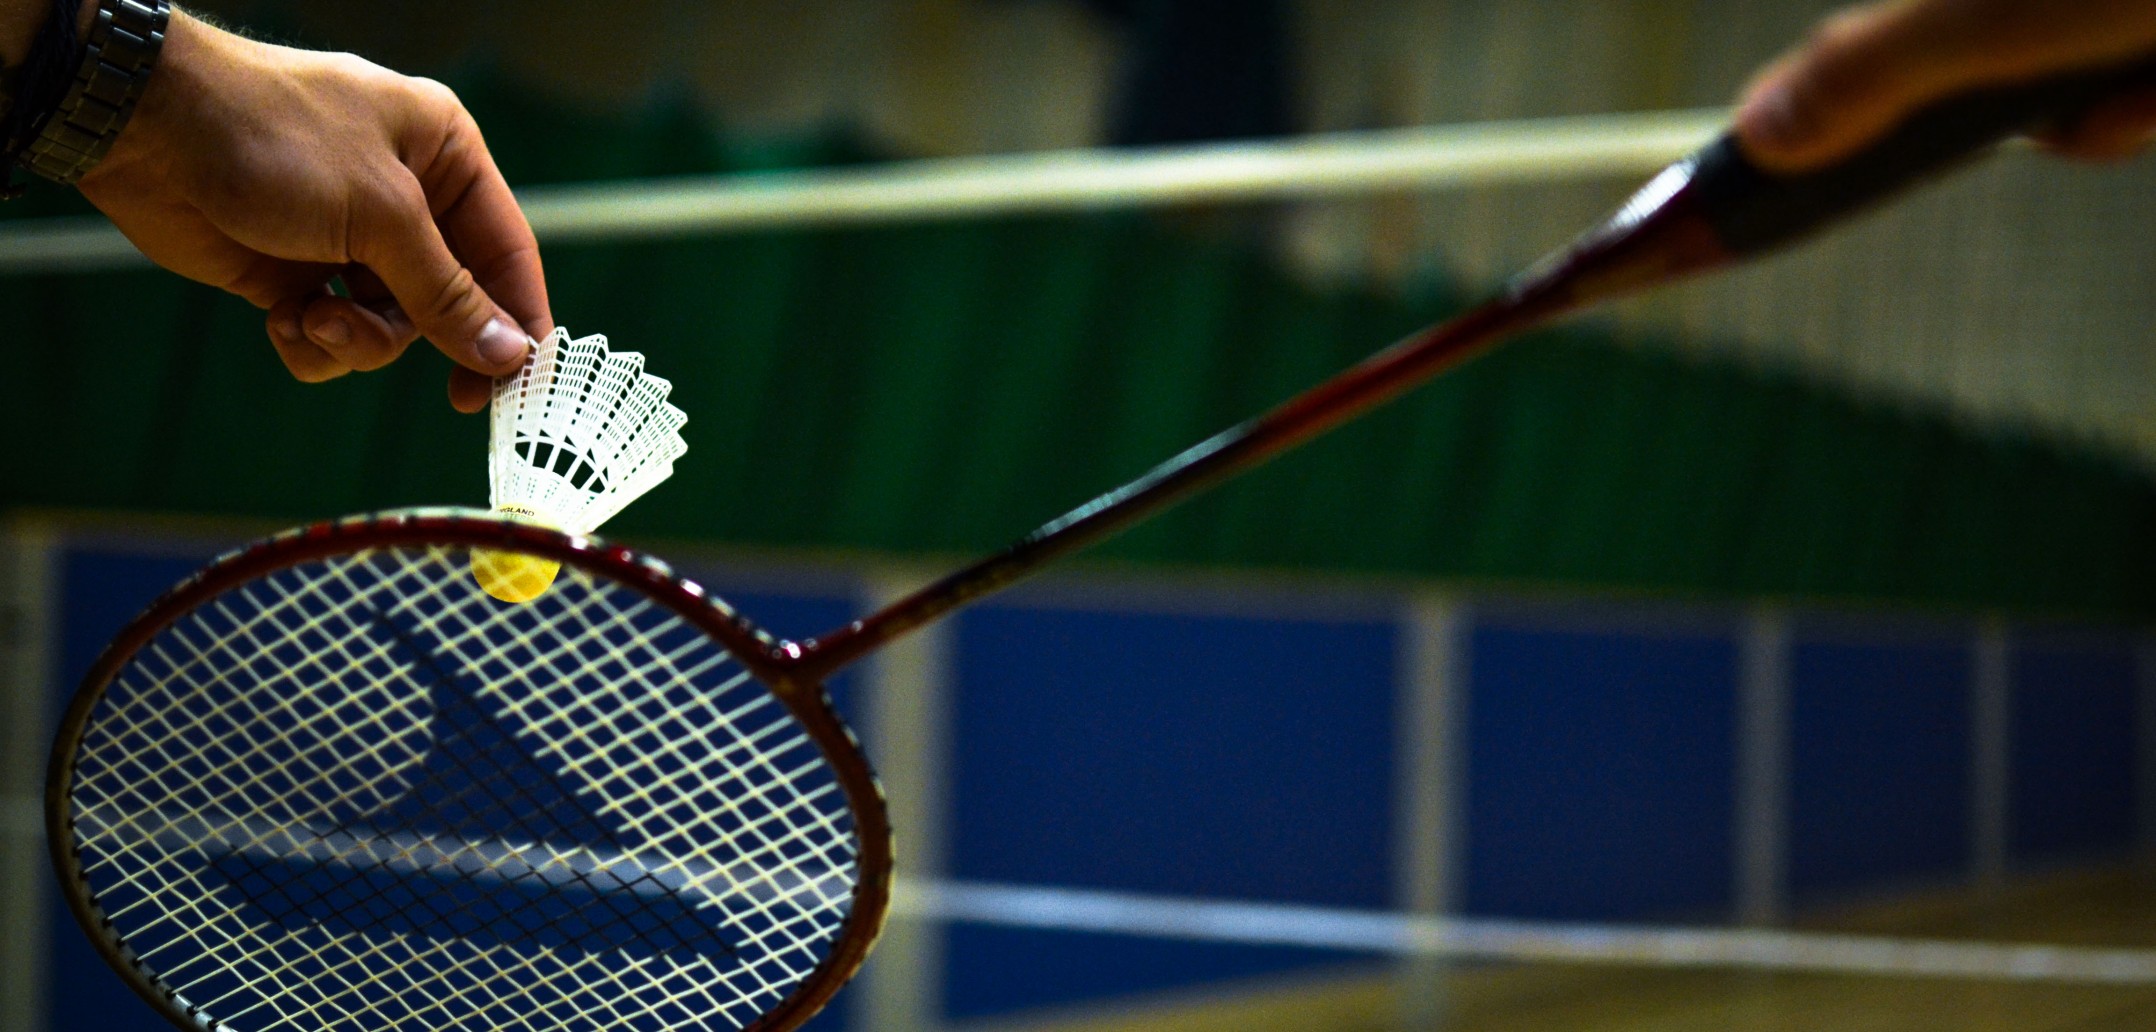 New Badminton Venues In Hyderabad- March 2019 - Playo